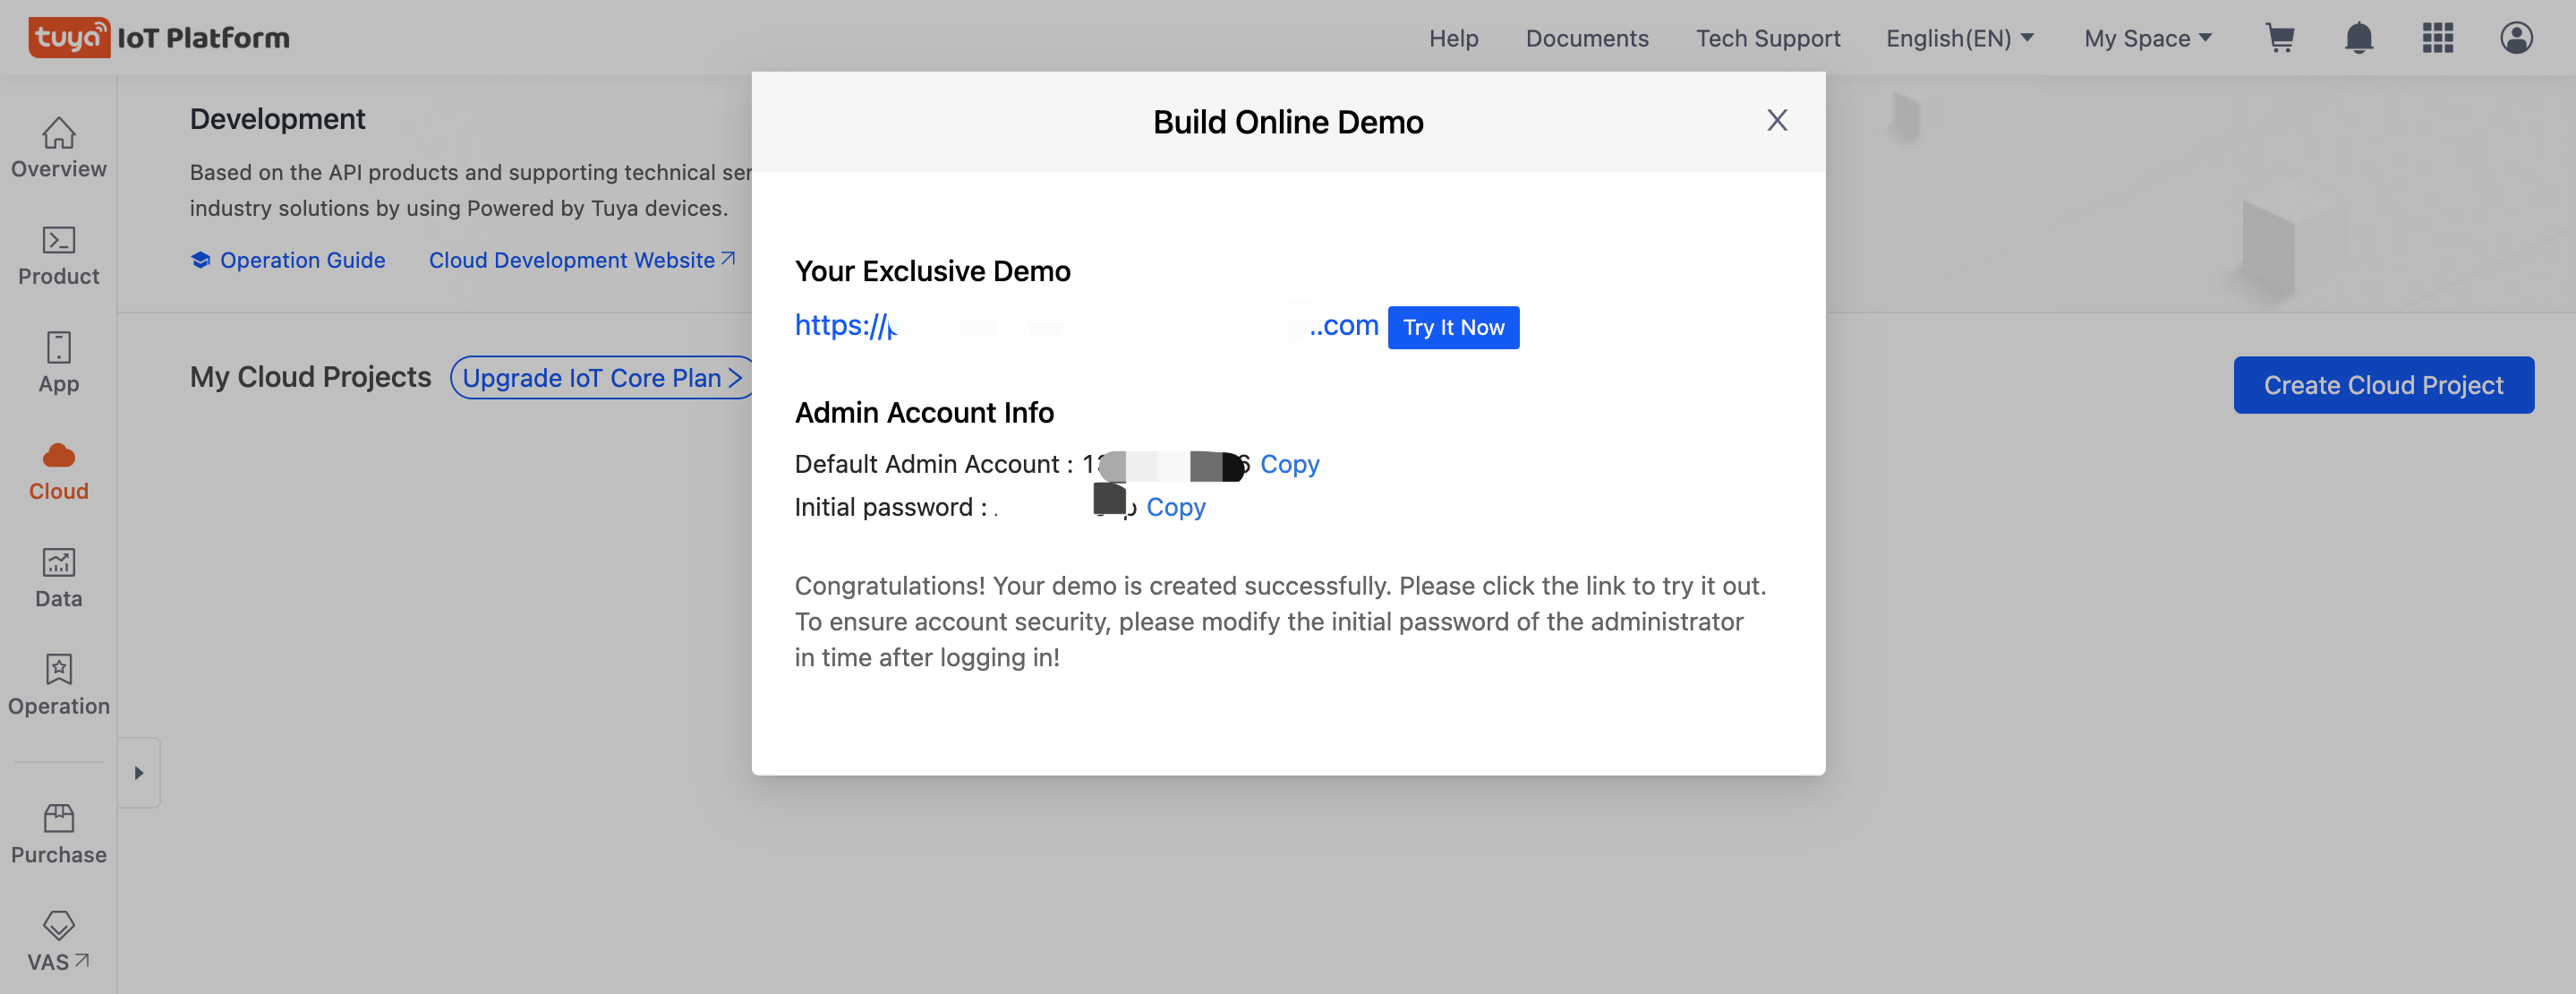 Build Online Demo